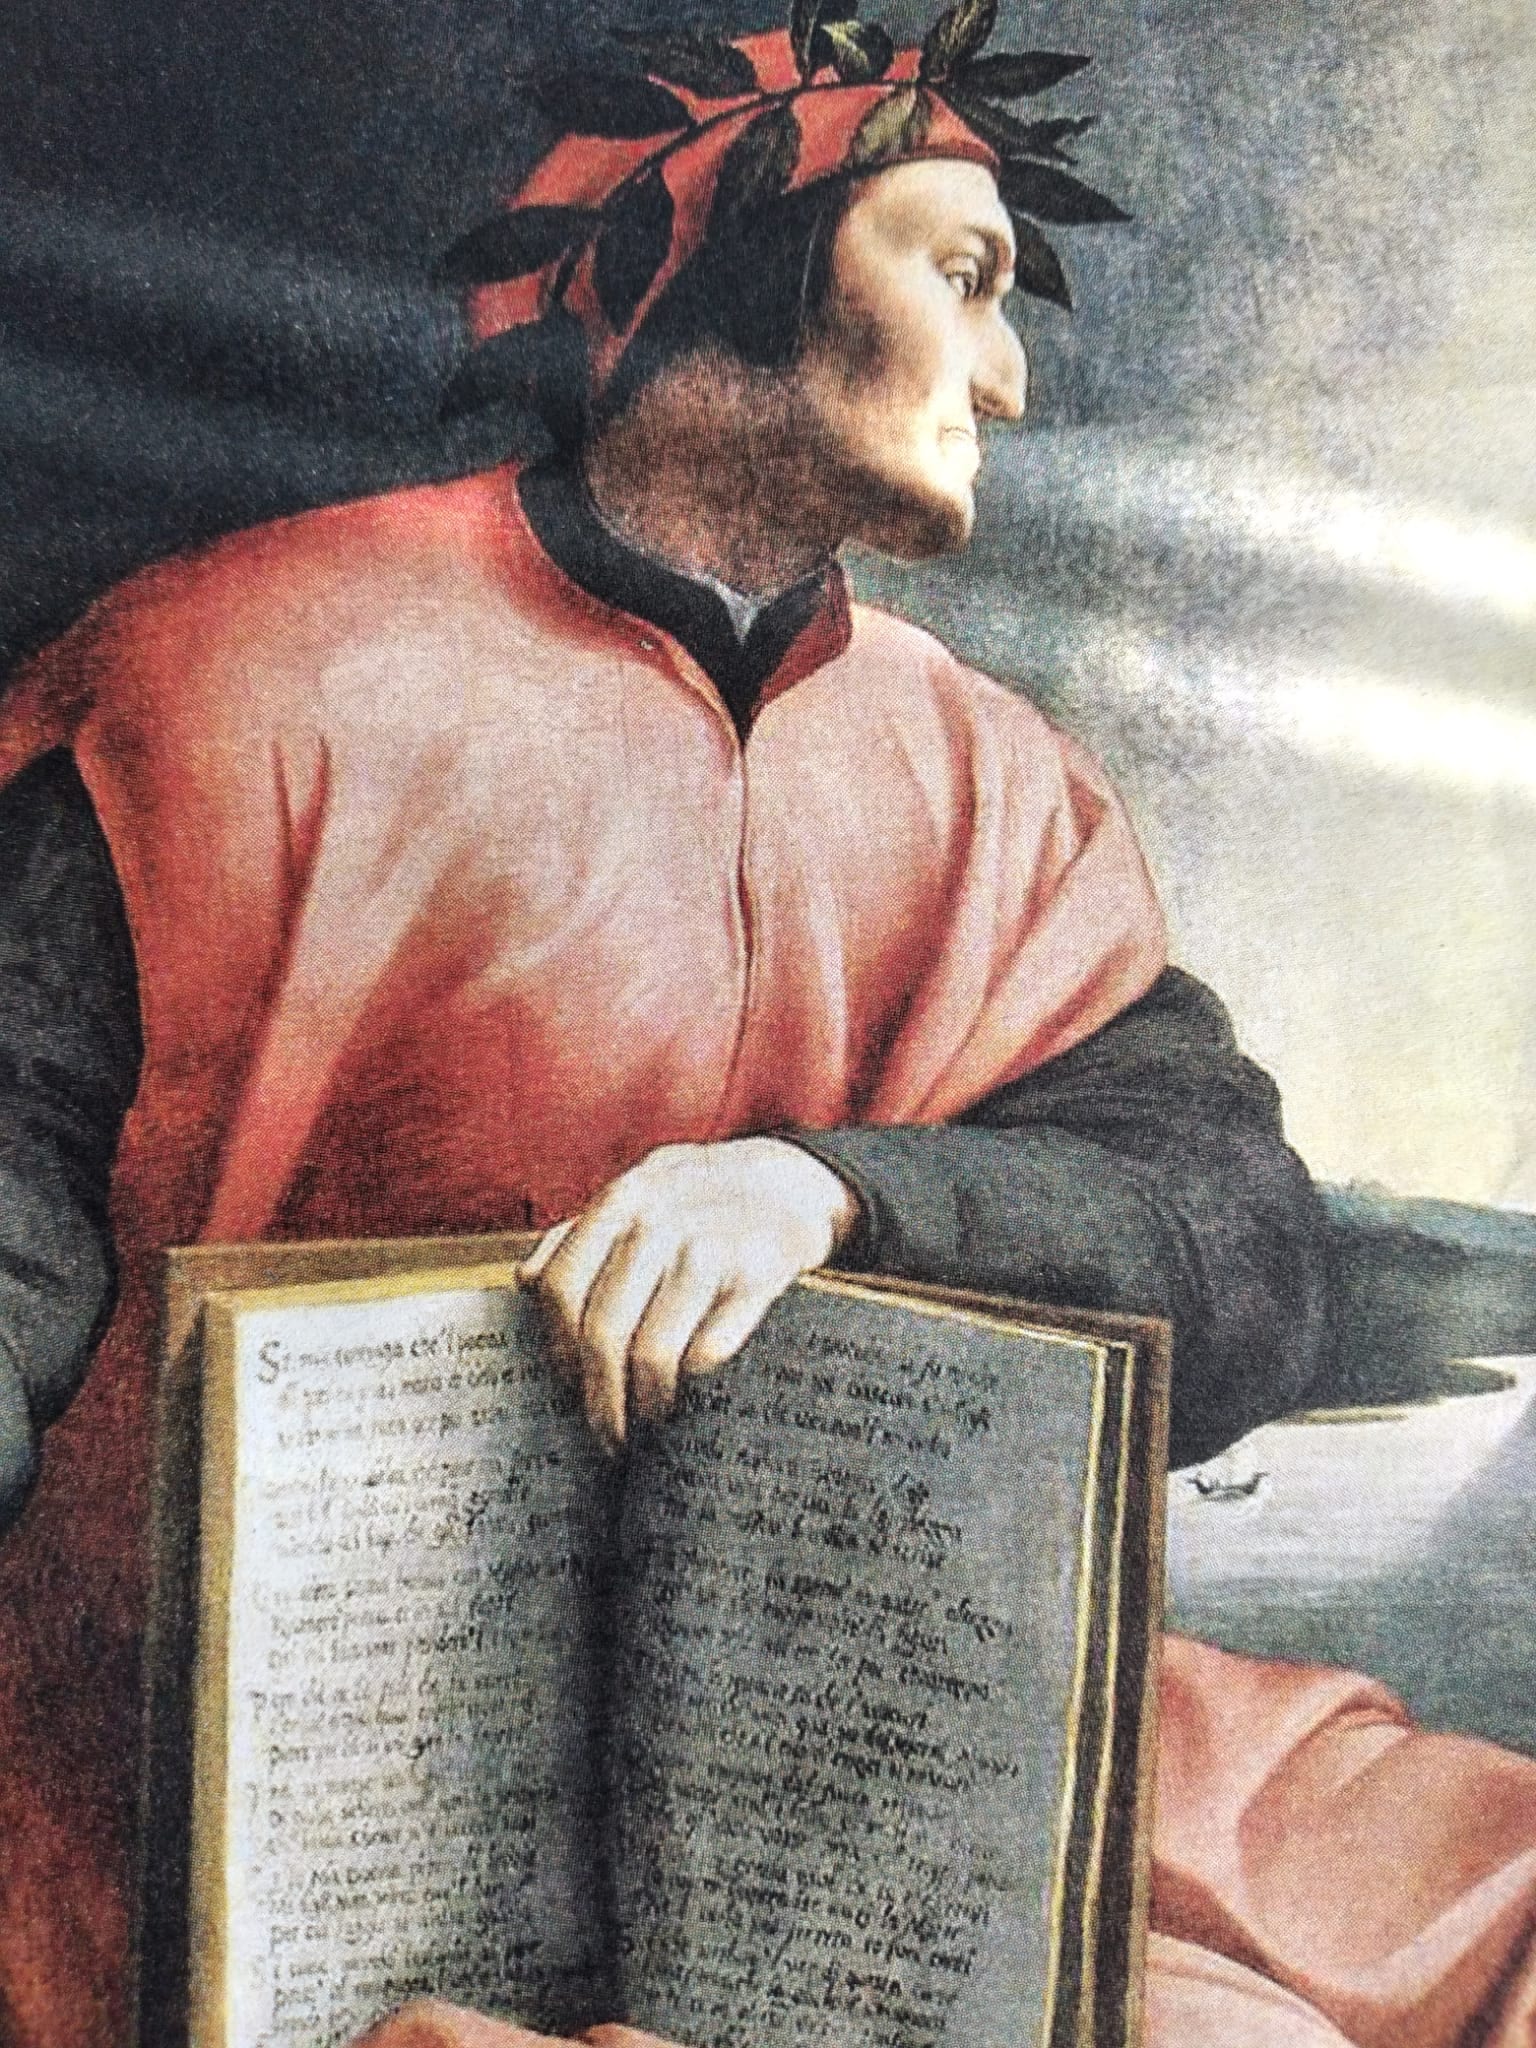 DANTEDI 25 MARZO (1265- 2021) – 700 ANNI dalla scomparsa di Dante Alighieri